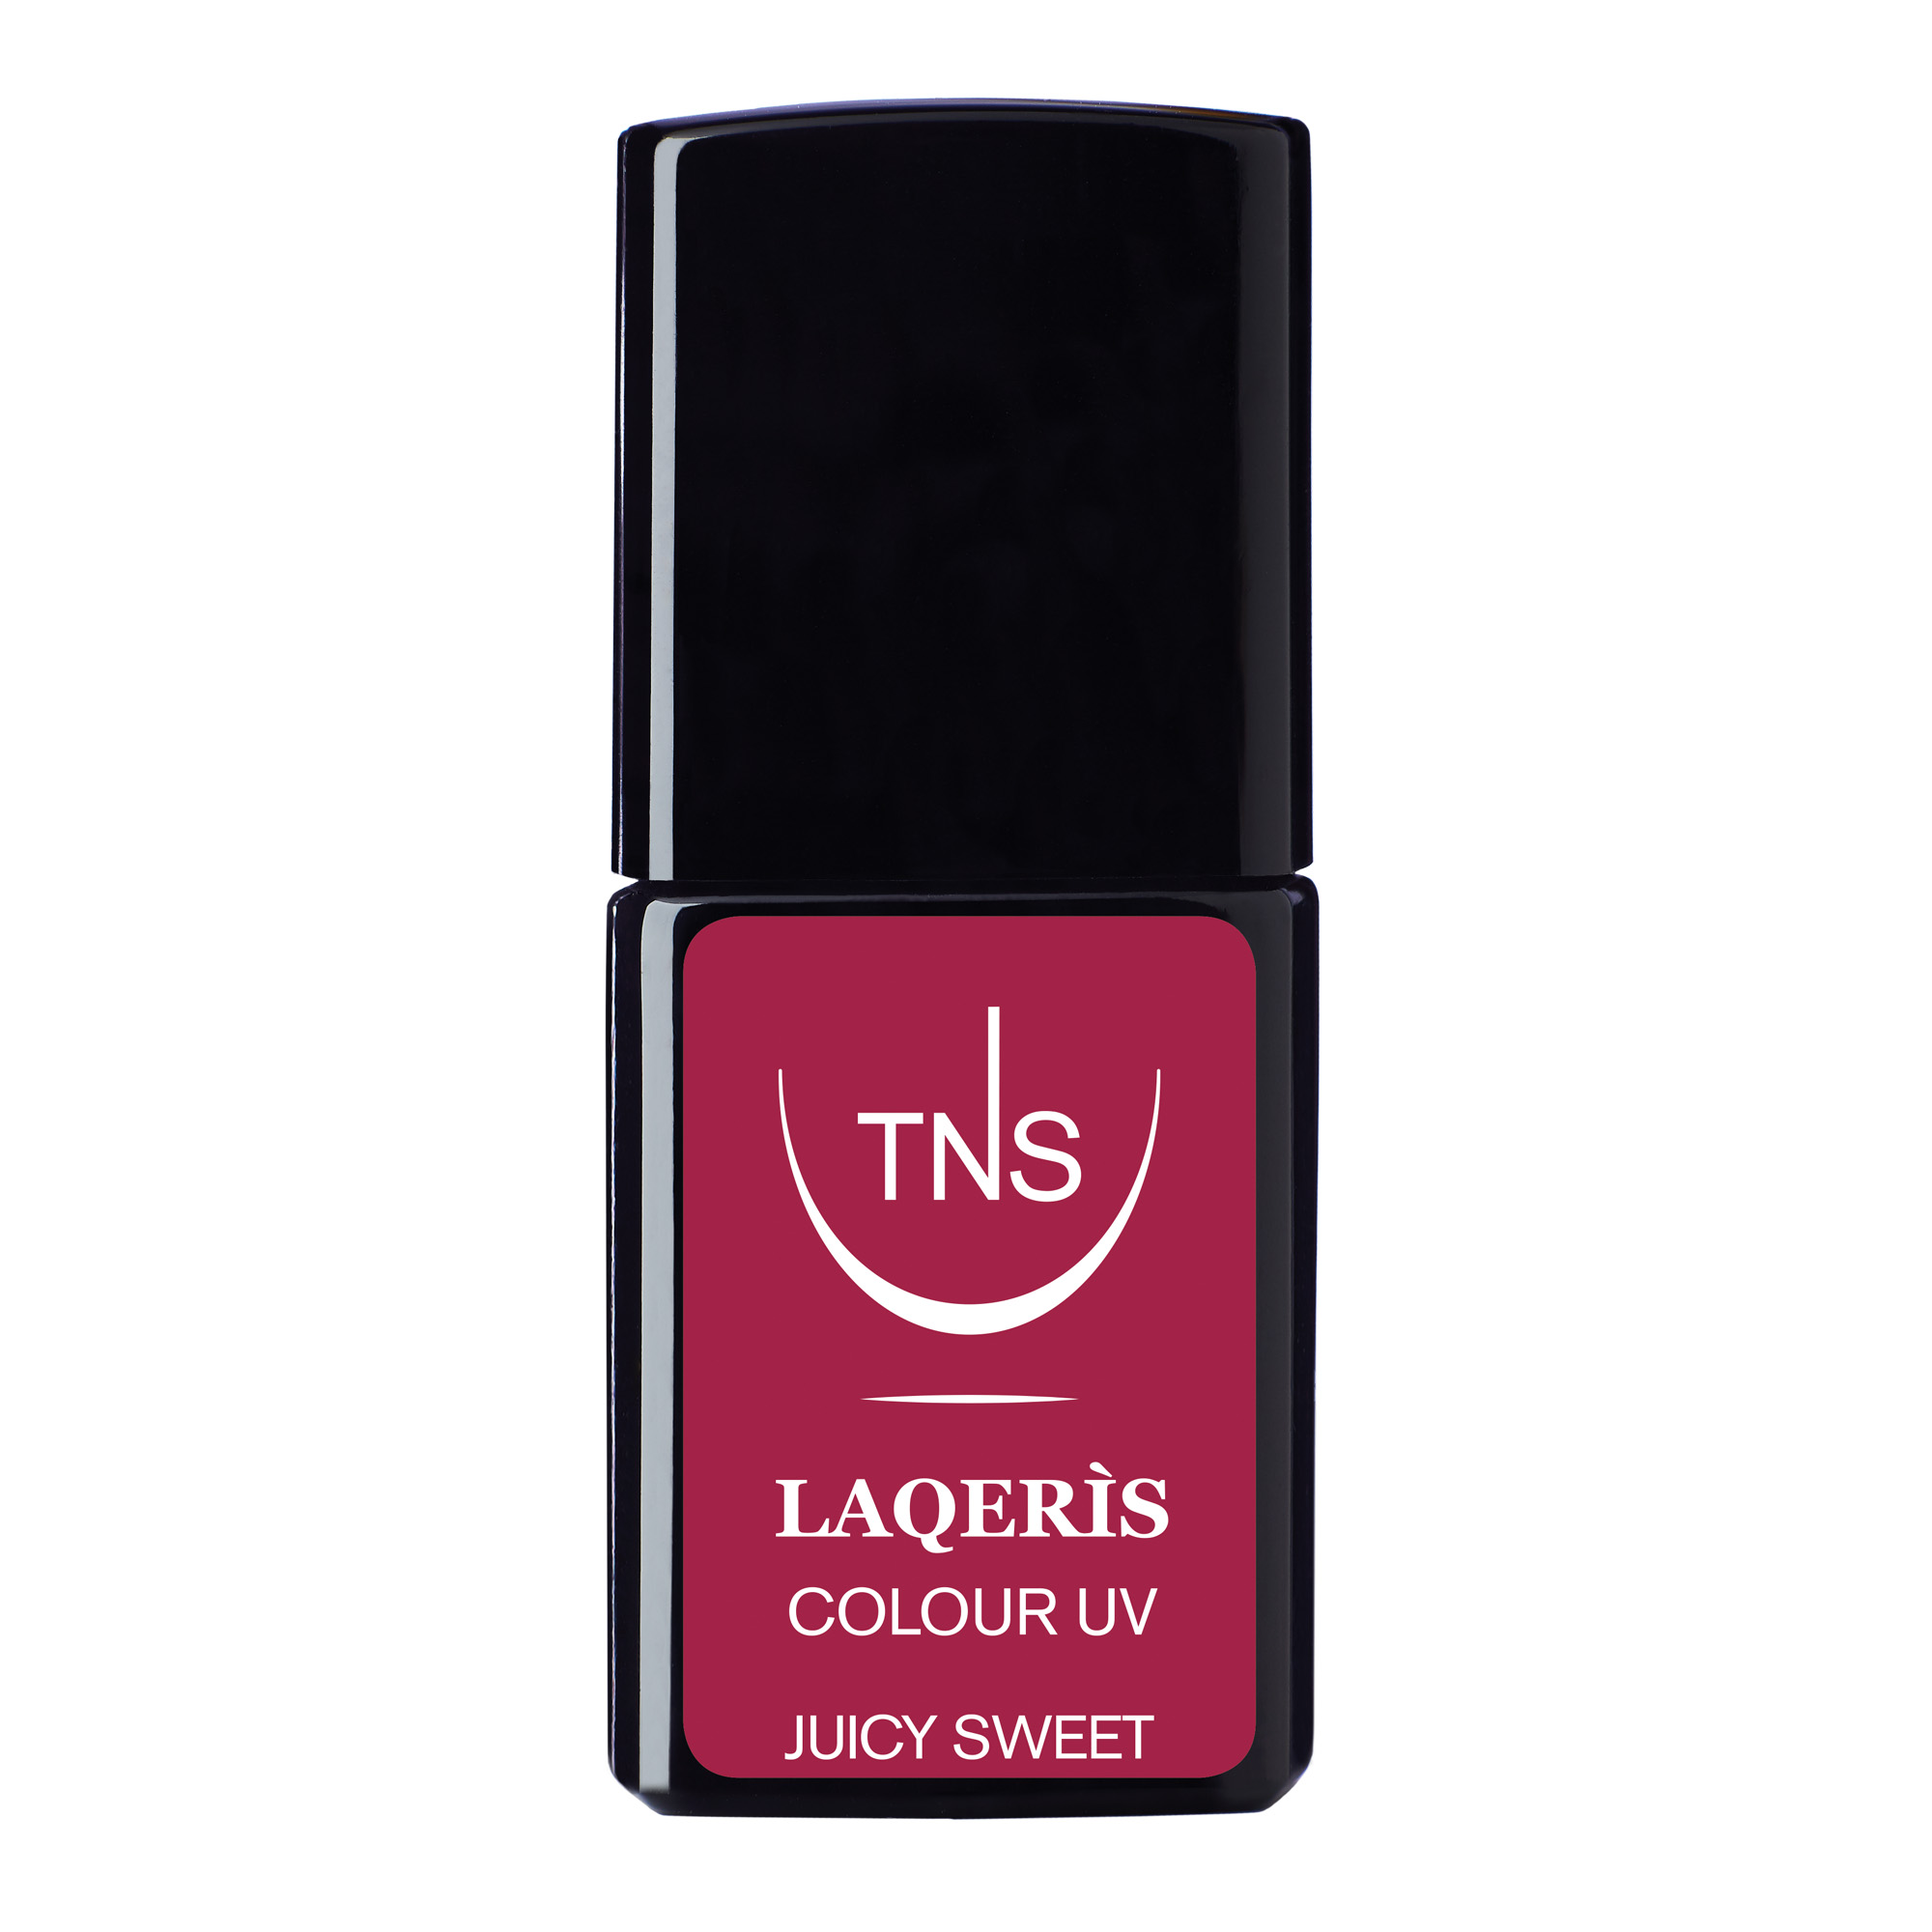 Semi-permanent nail polish red Juicy Sweet 10 ml Laqerìs TNS